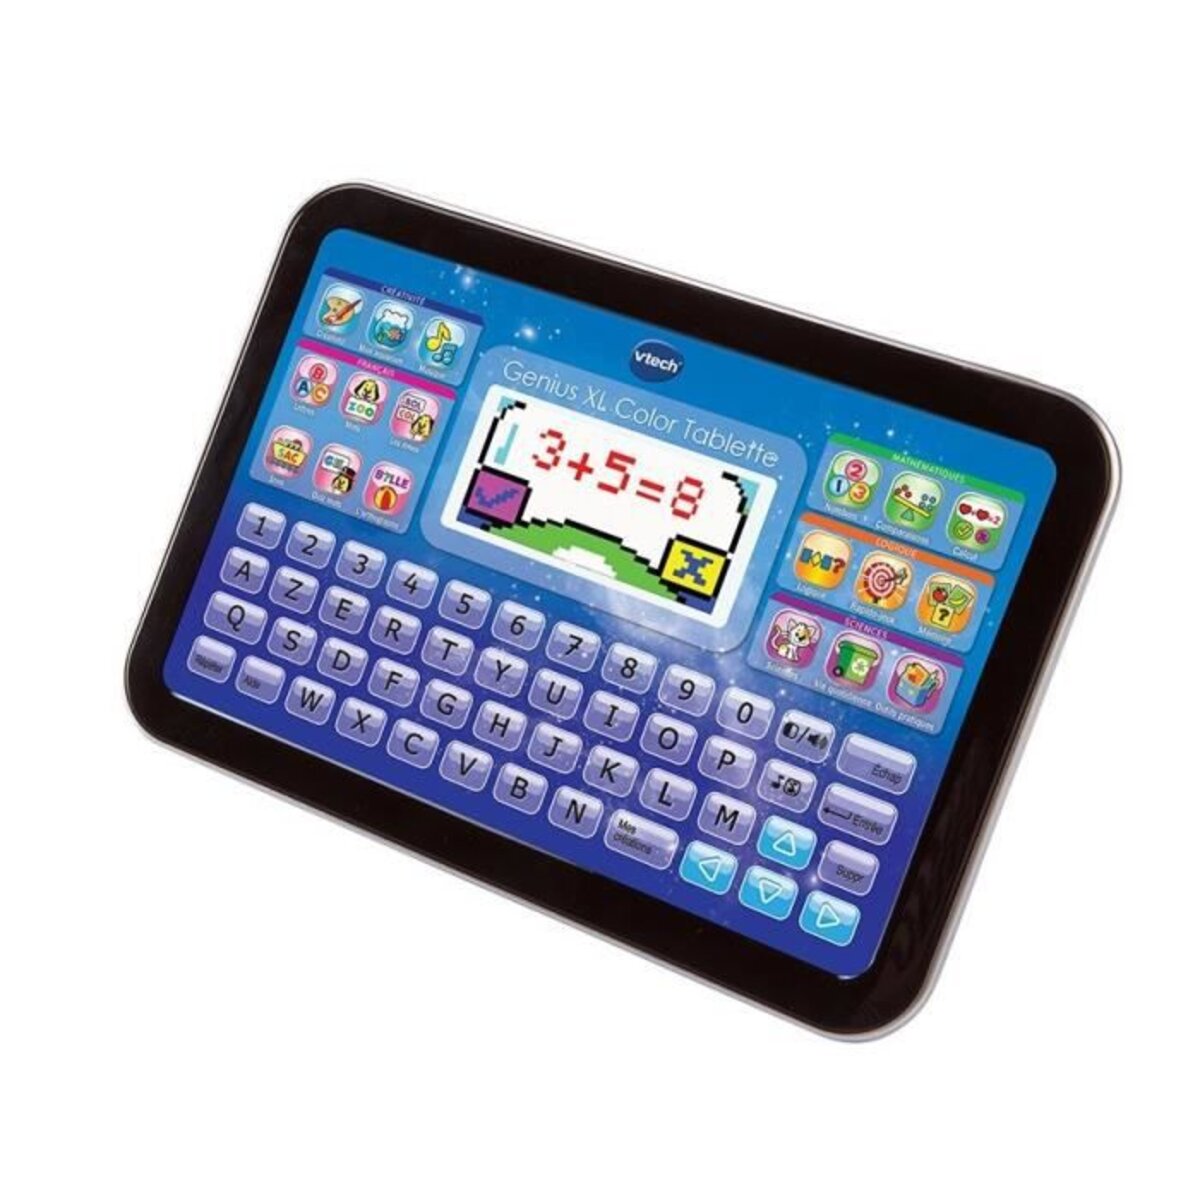 Vtech - genius xl color - tablette éducative enfant - noire - La Poste